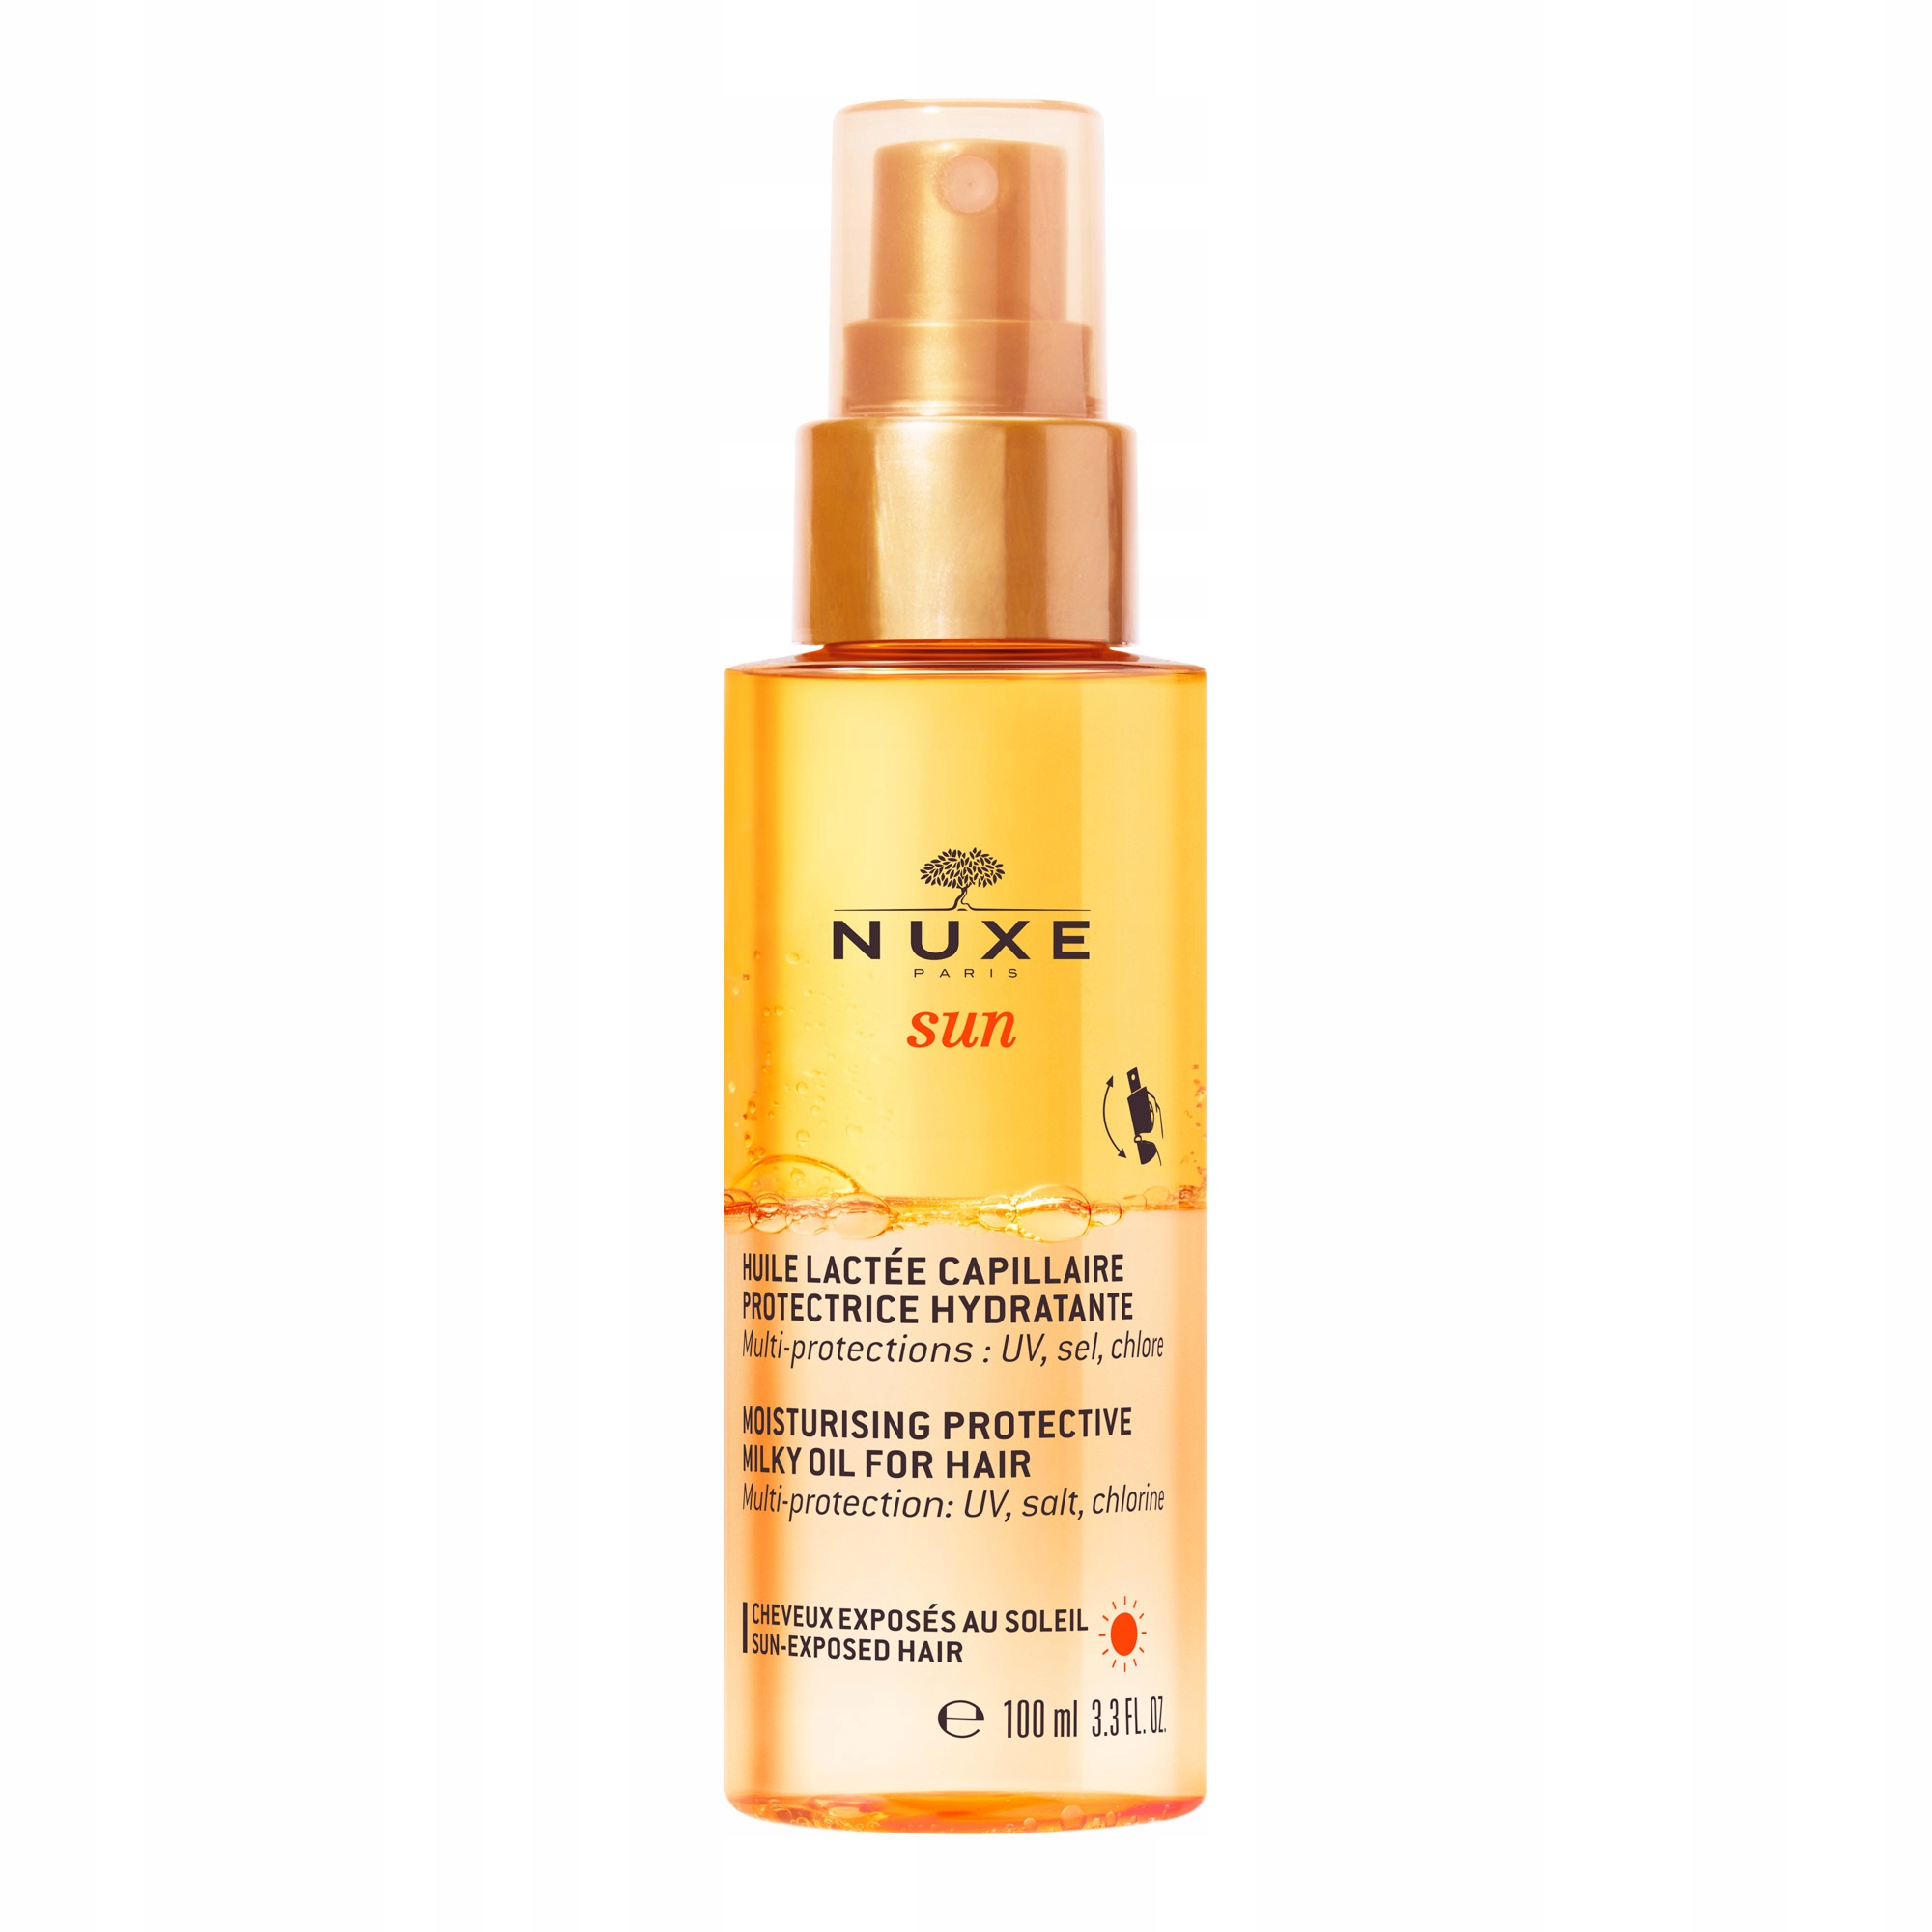 nuxe sun nawilżający olejek do włosów